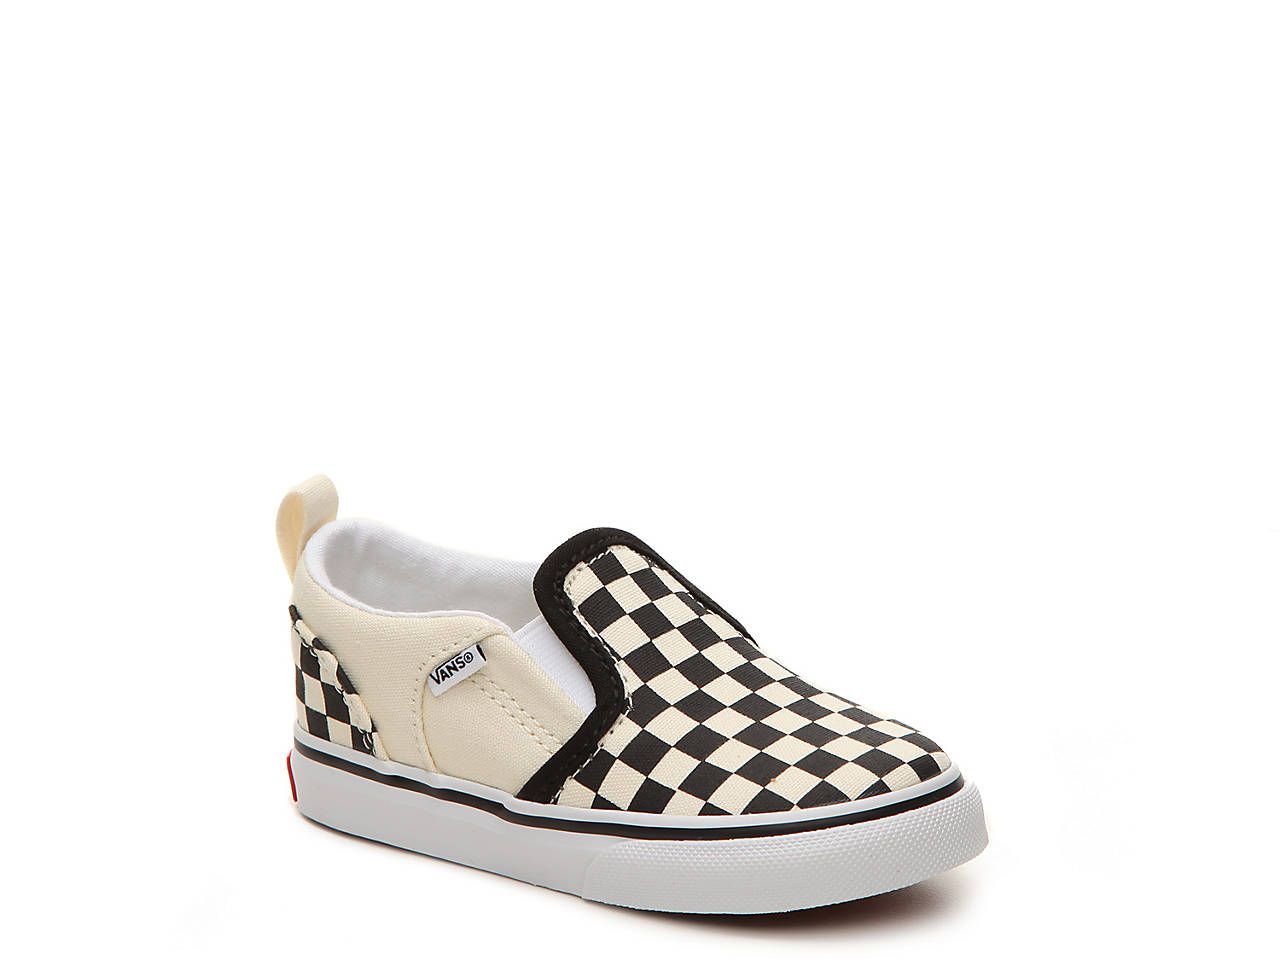 Asher Checkers Infant & Toddler Slip-On Sneaker | DSW